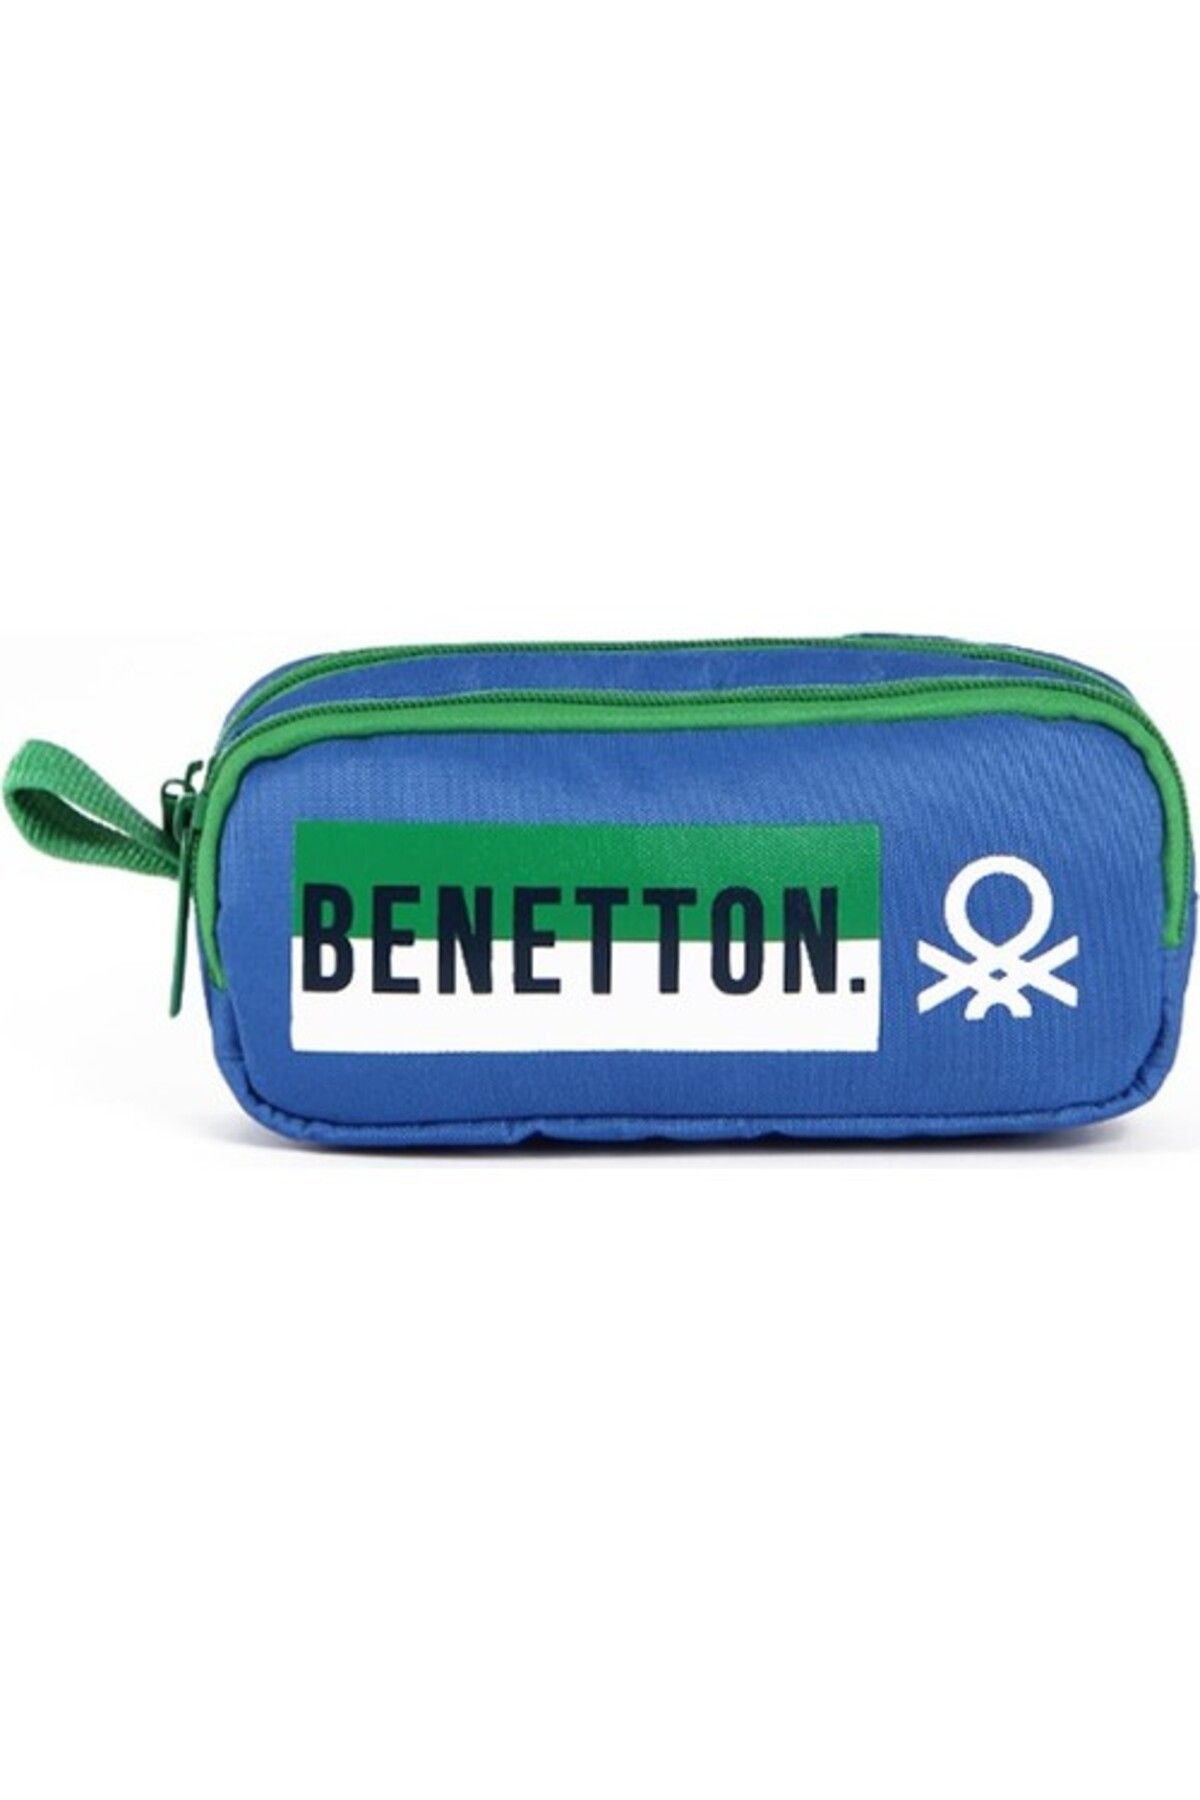 Benetton United Colors of Benetton Çift Bölmeli Mavi Kalem Çantası 04277